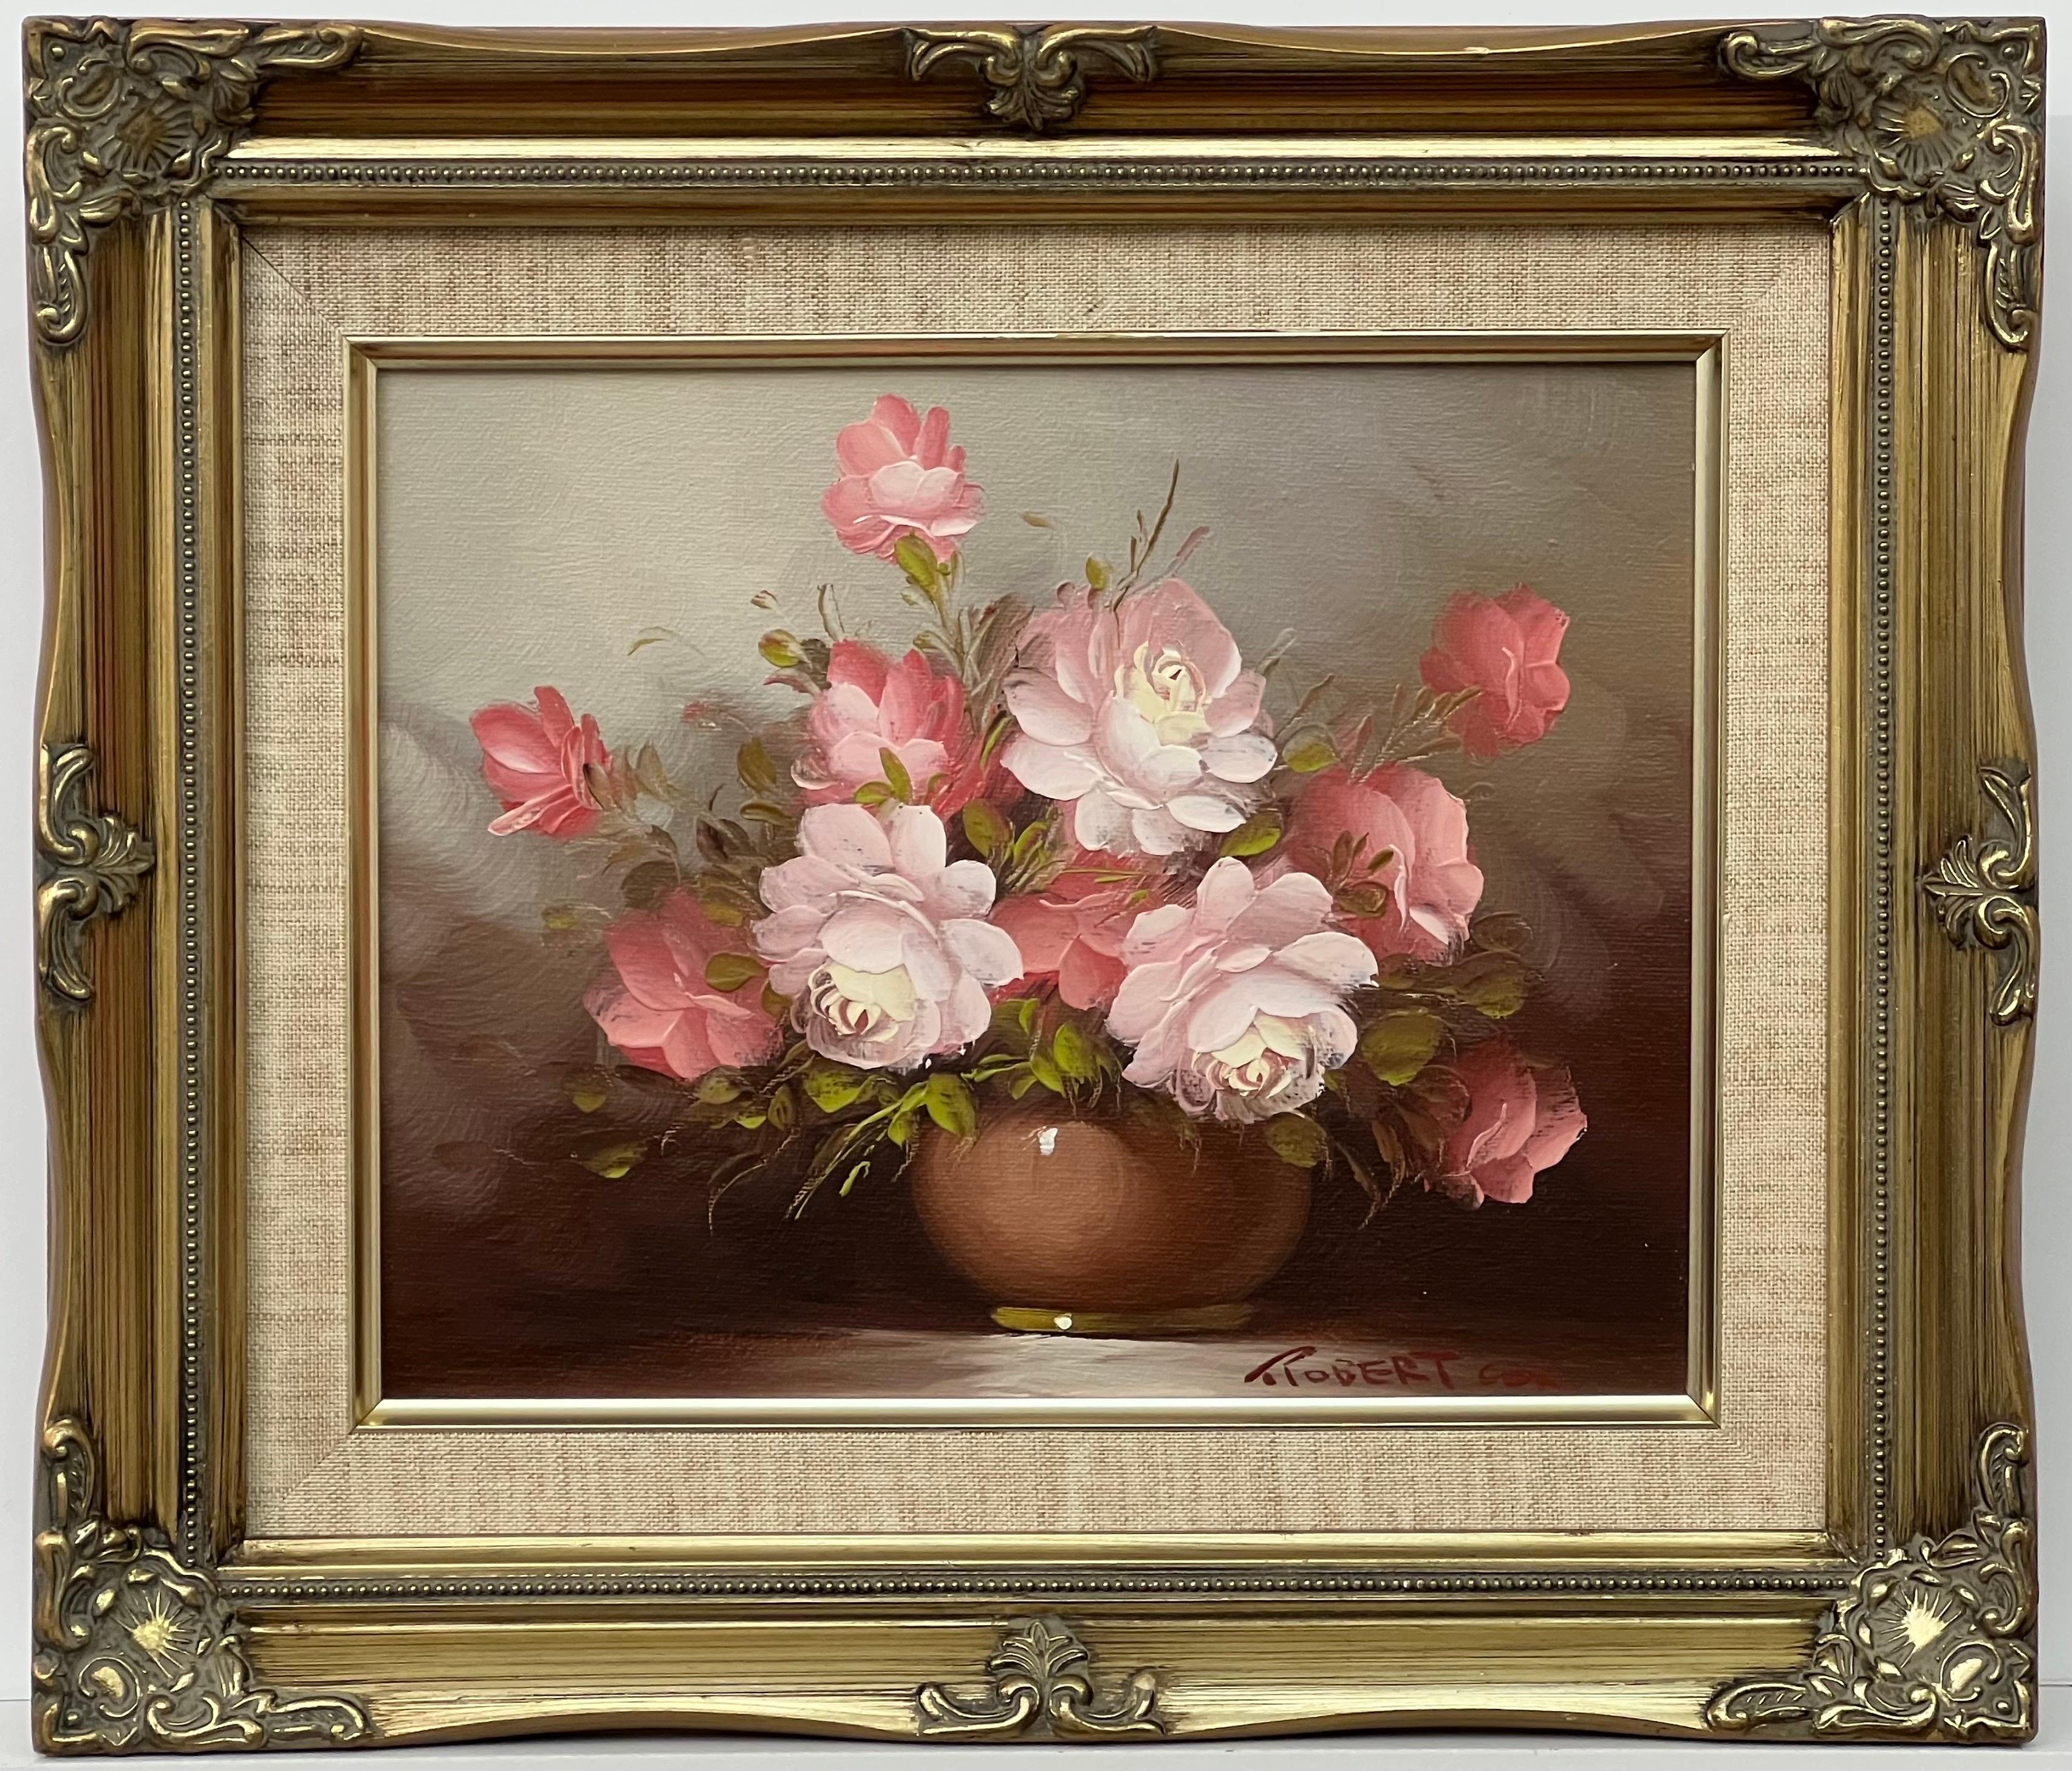 Nature morte d'un vase de roses rouges et blanches par un artiste américain du 20e siècle - Impressionnisme américain Painting par Robert Cox